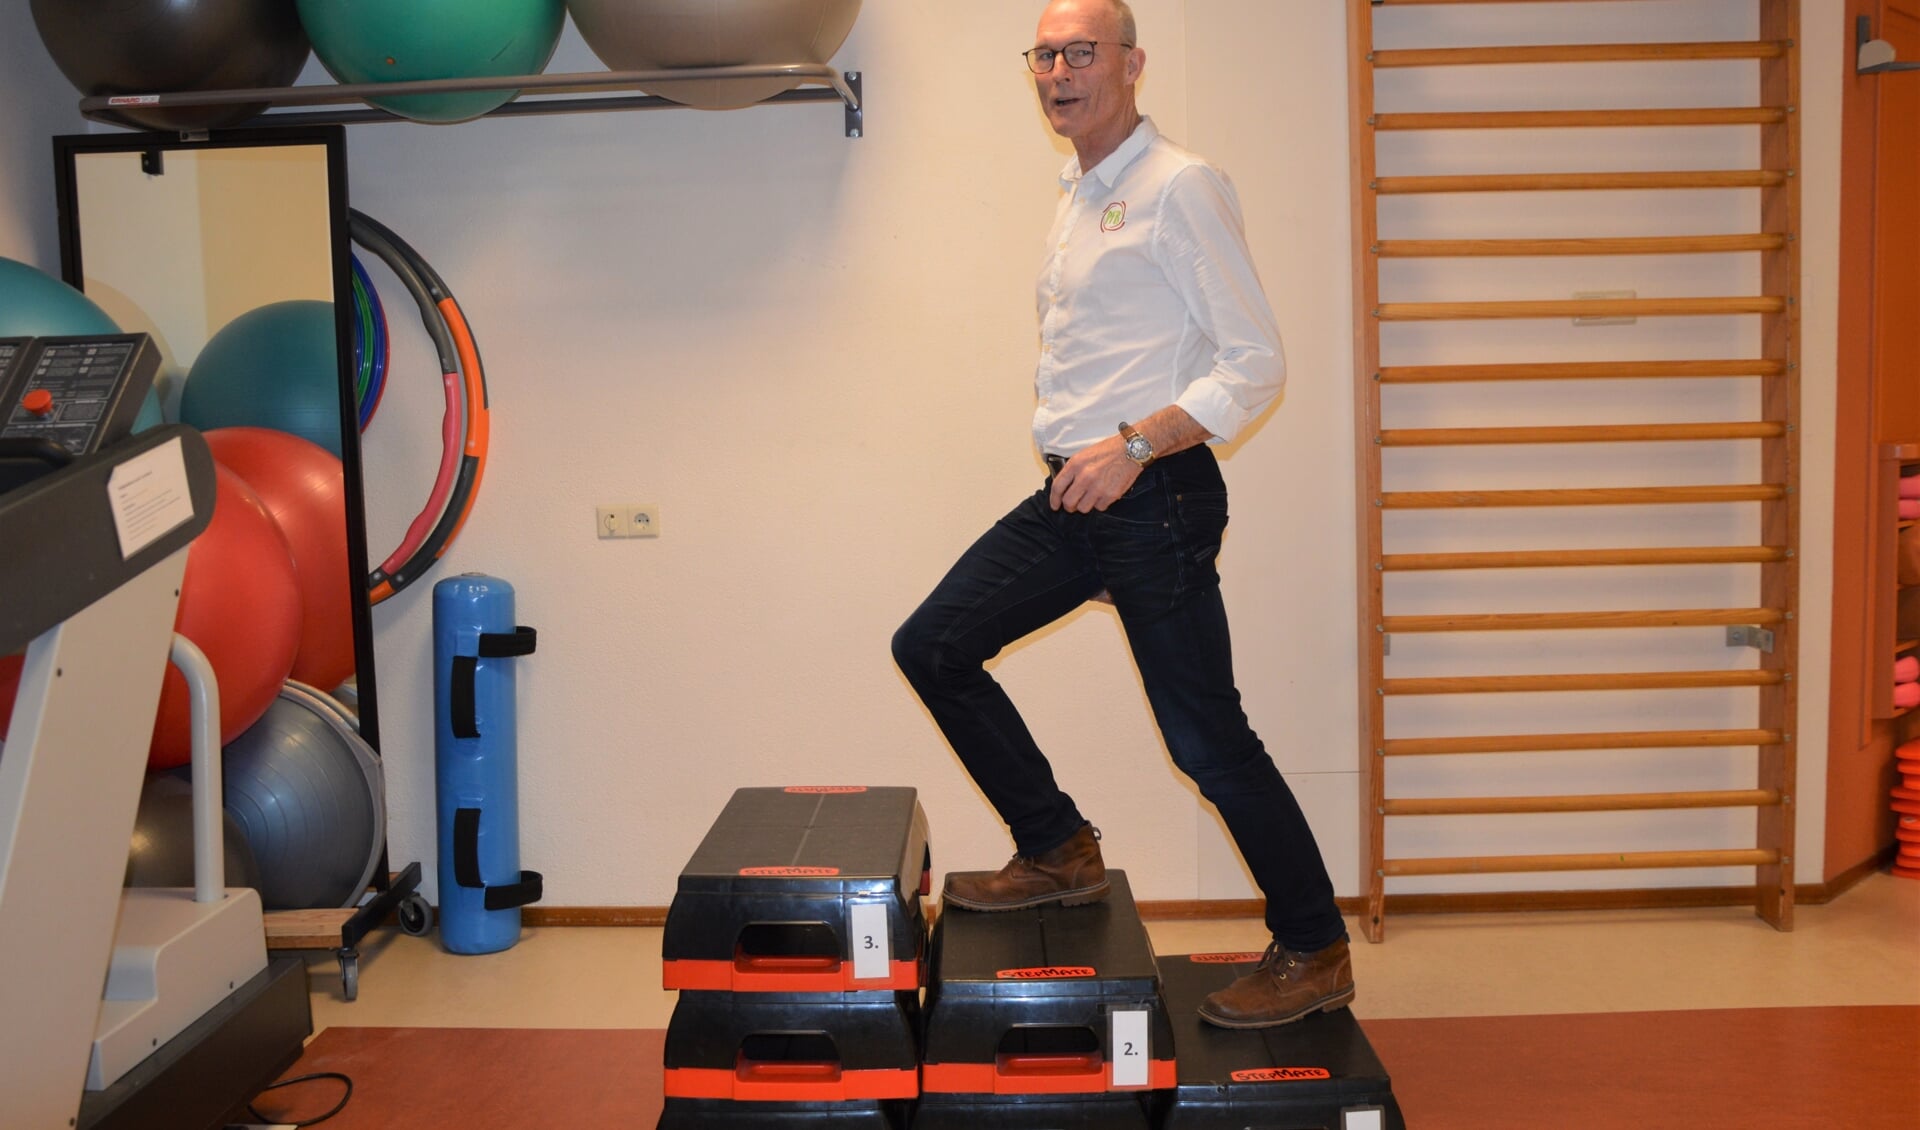 Met fysiotherapeut Gerard Arkenbout in drie stappen aan de slag met de app Netwerk Artrose.